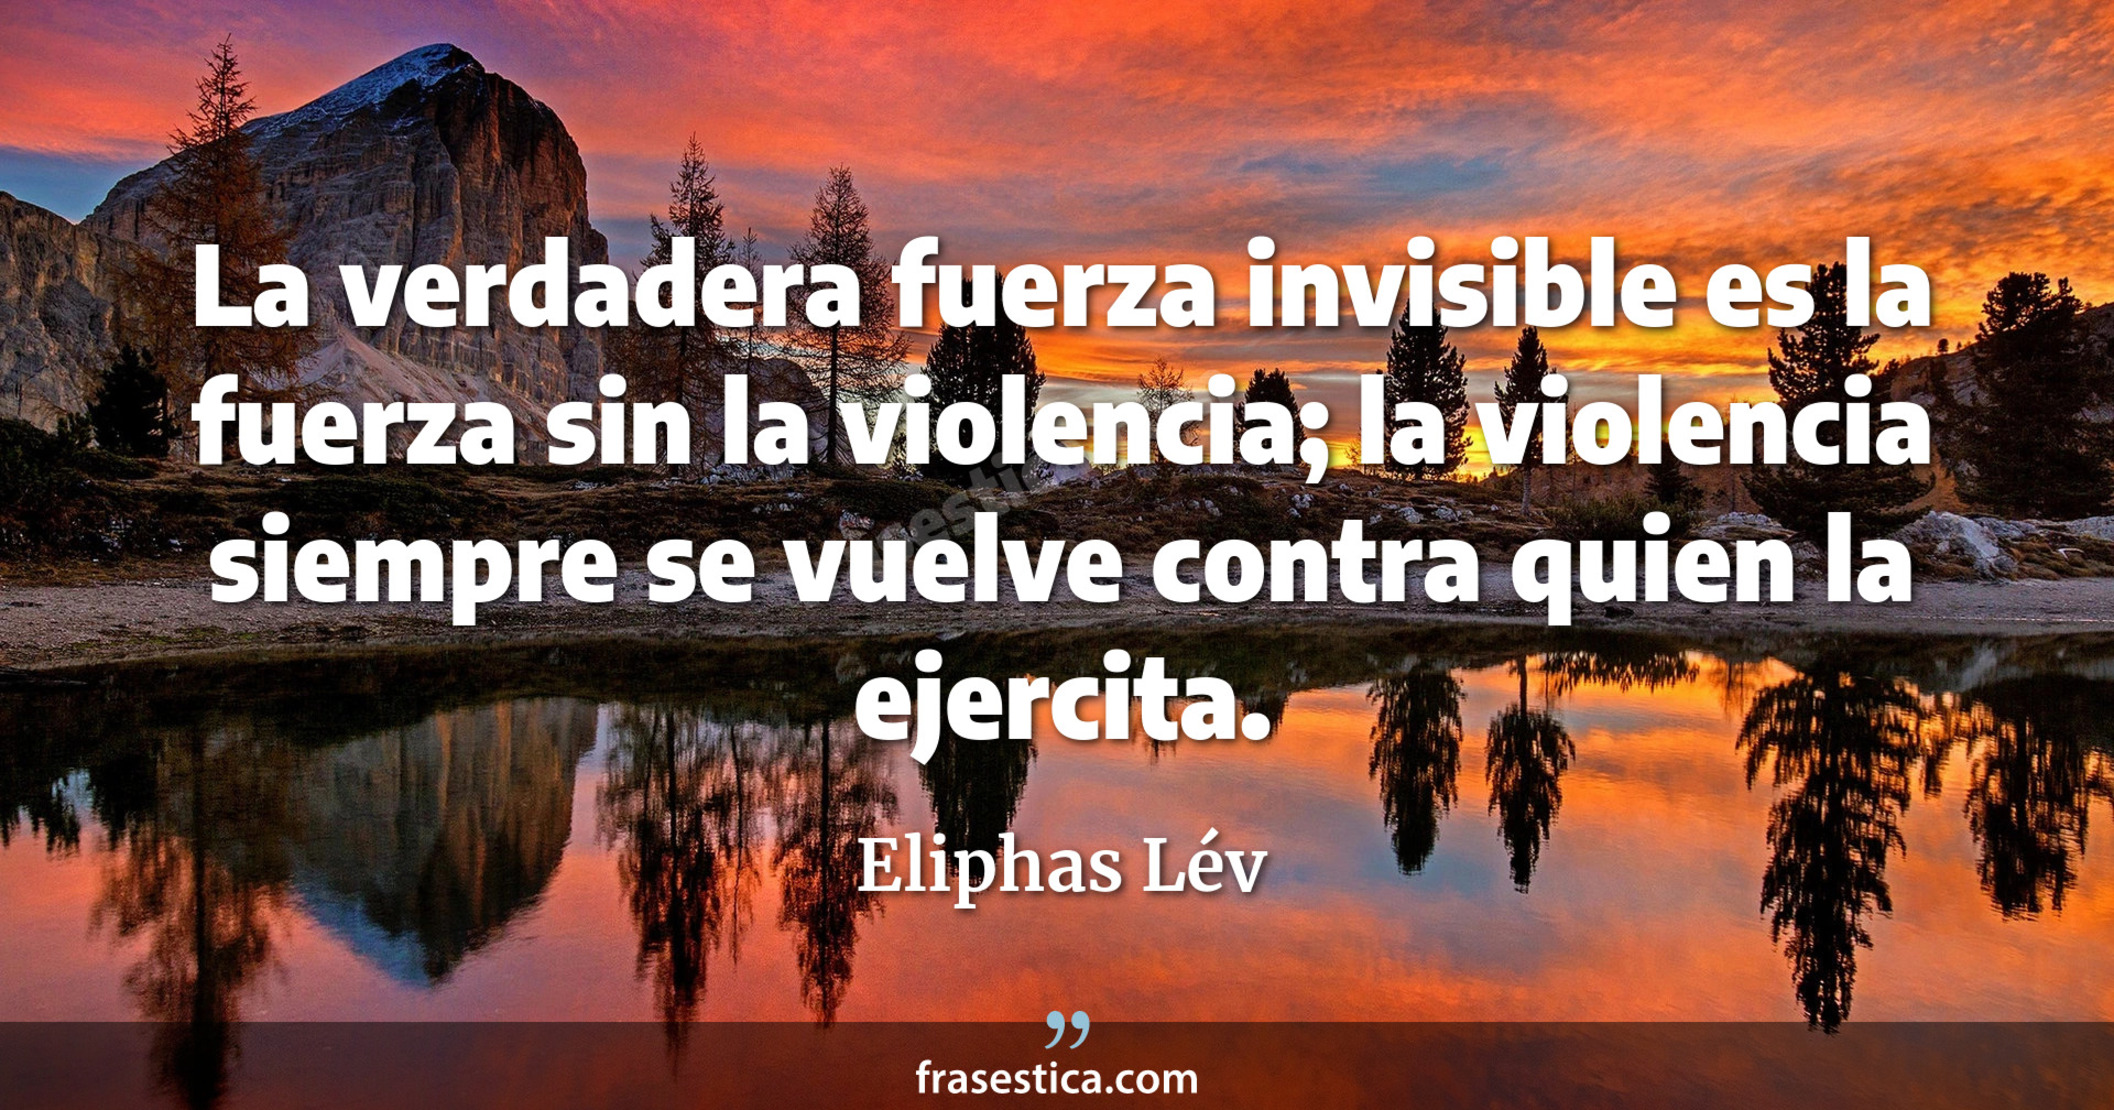 La verdadera fuerza invisible es la fuerza sin la violencia; la violencia siempre se vuelve contra quien la ejercita. - Eliphas Lév